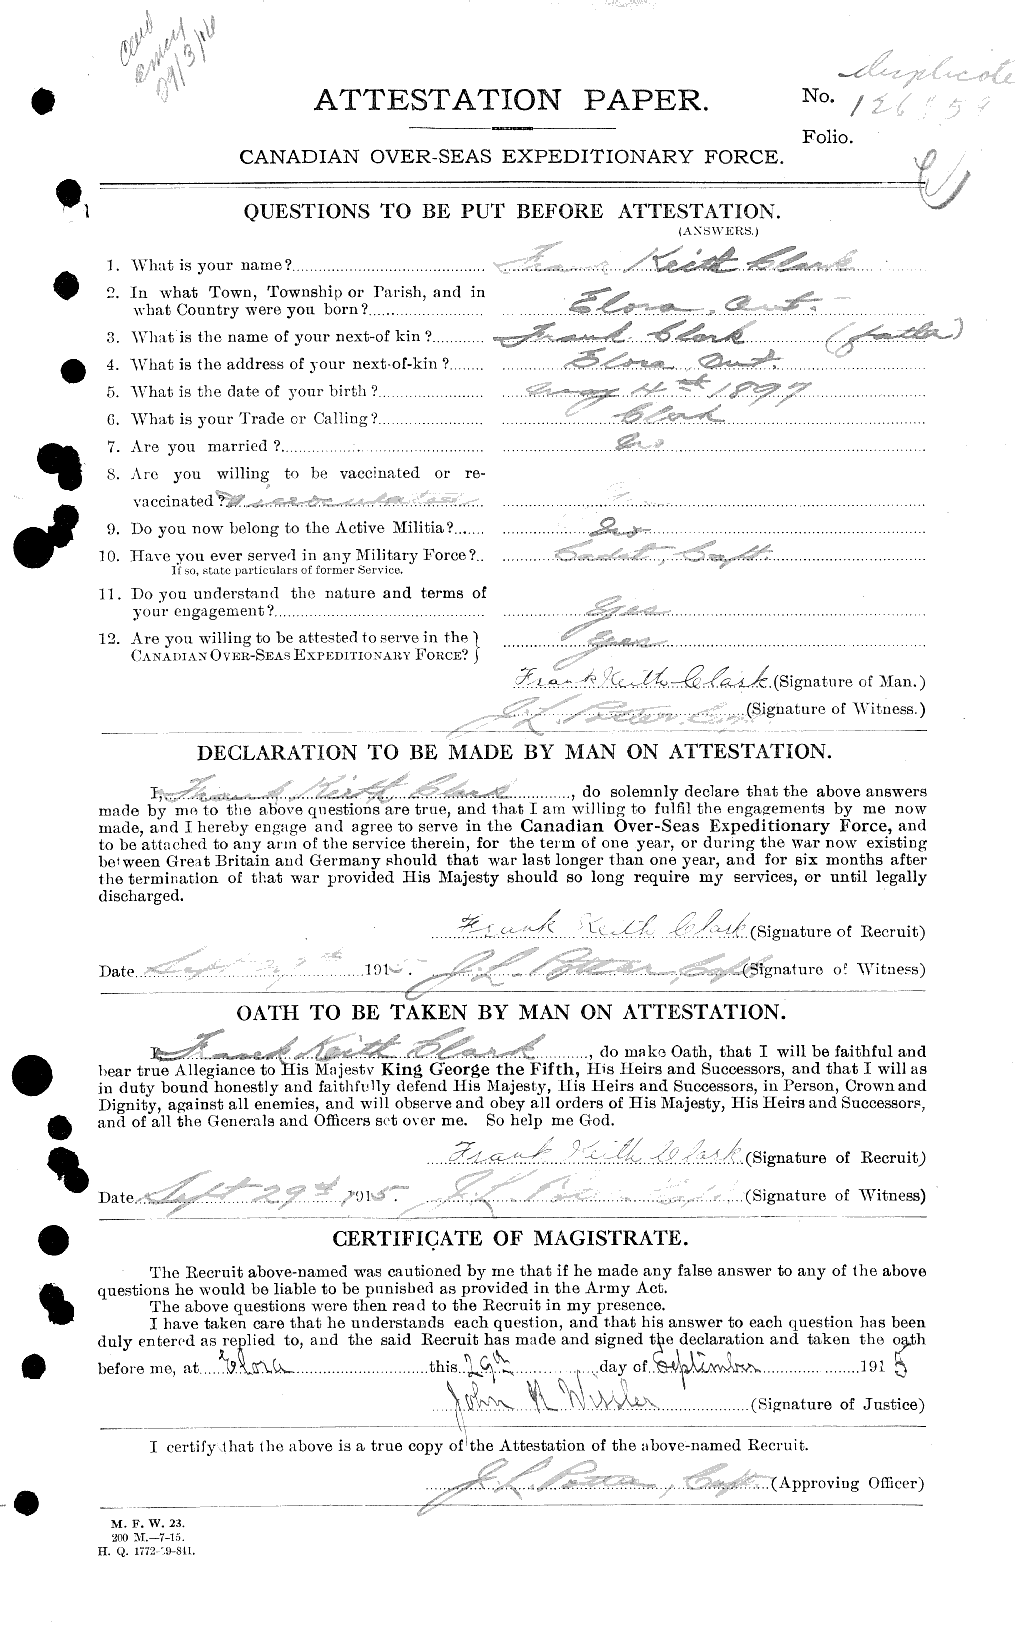 Dossiers du Personnel de la Première Guerre mondiale - CEC 020910a